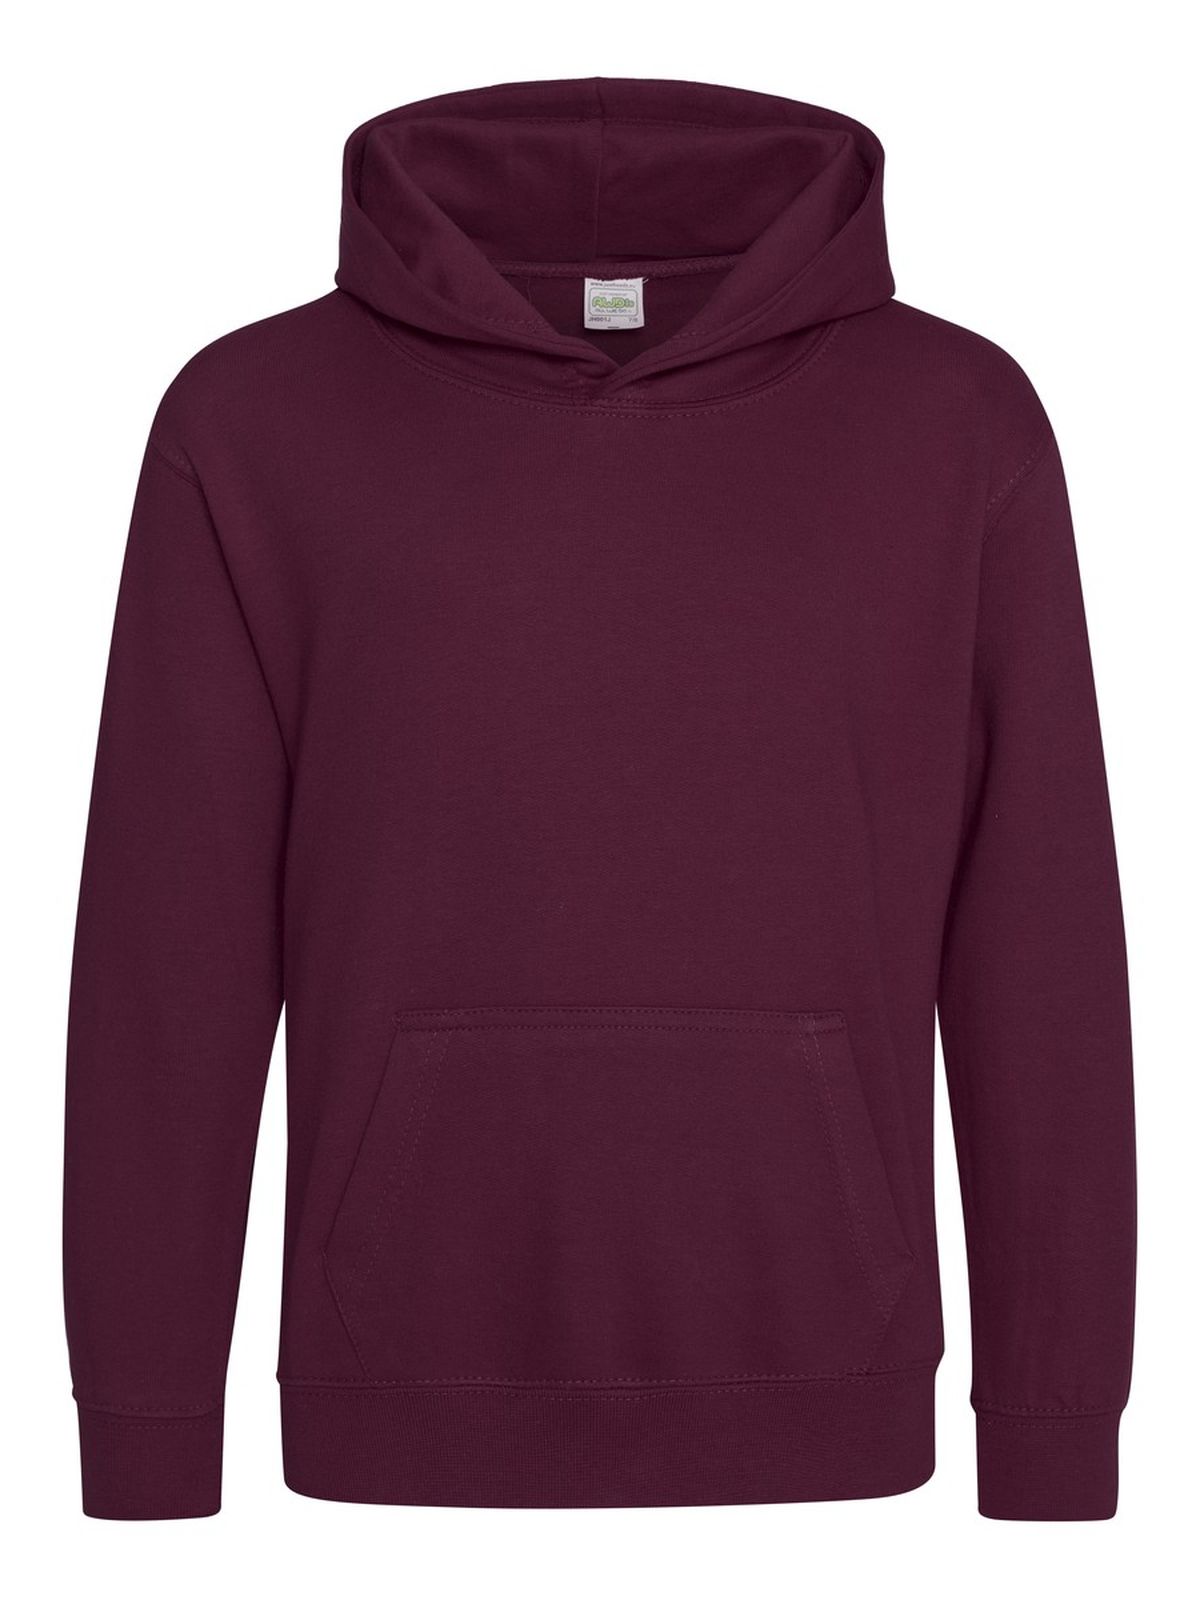 kids-organic-hoodie-burgundy.webp